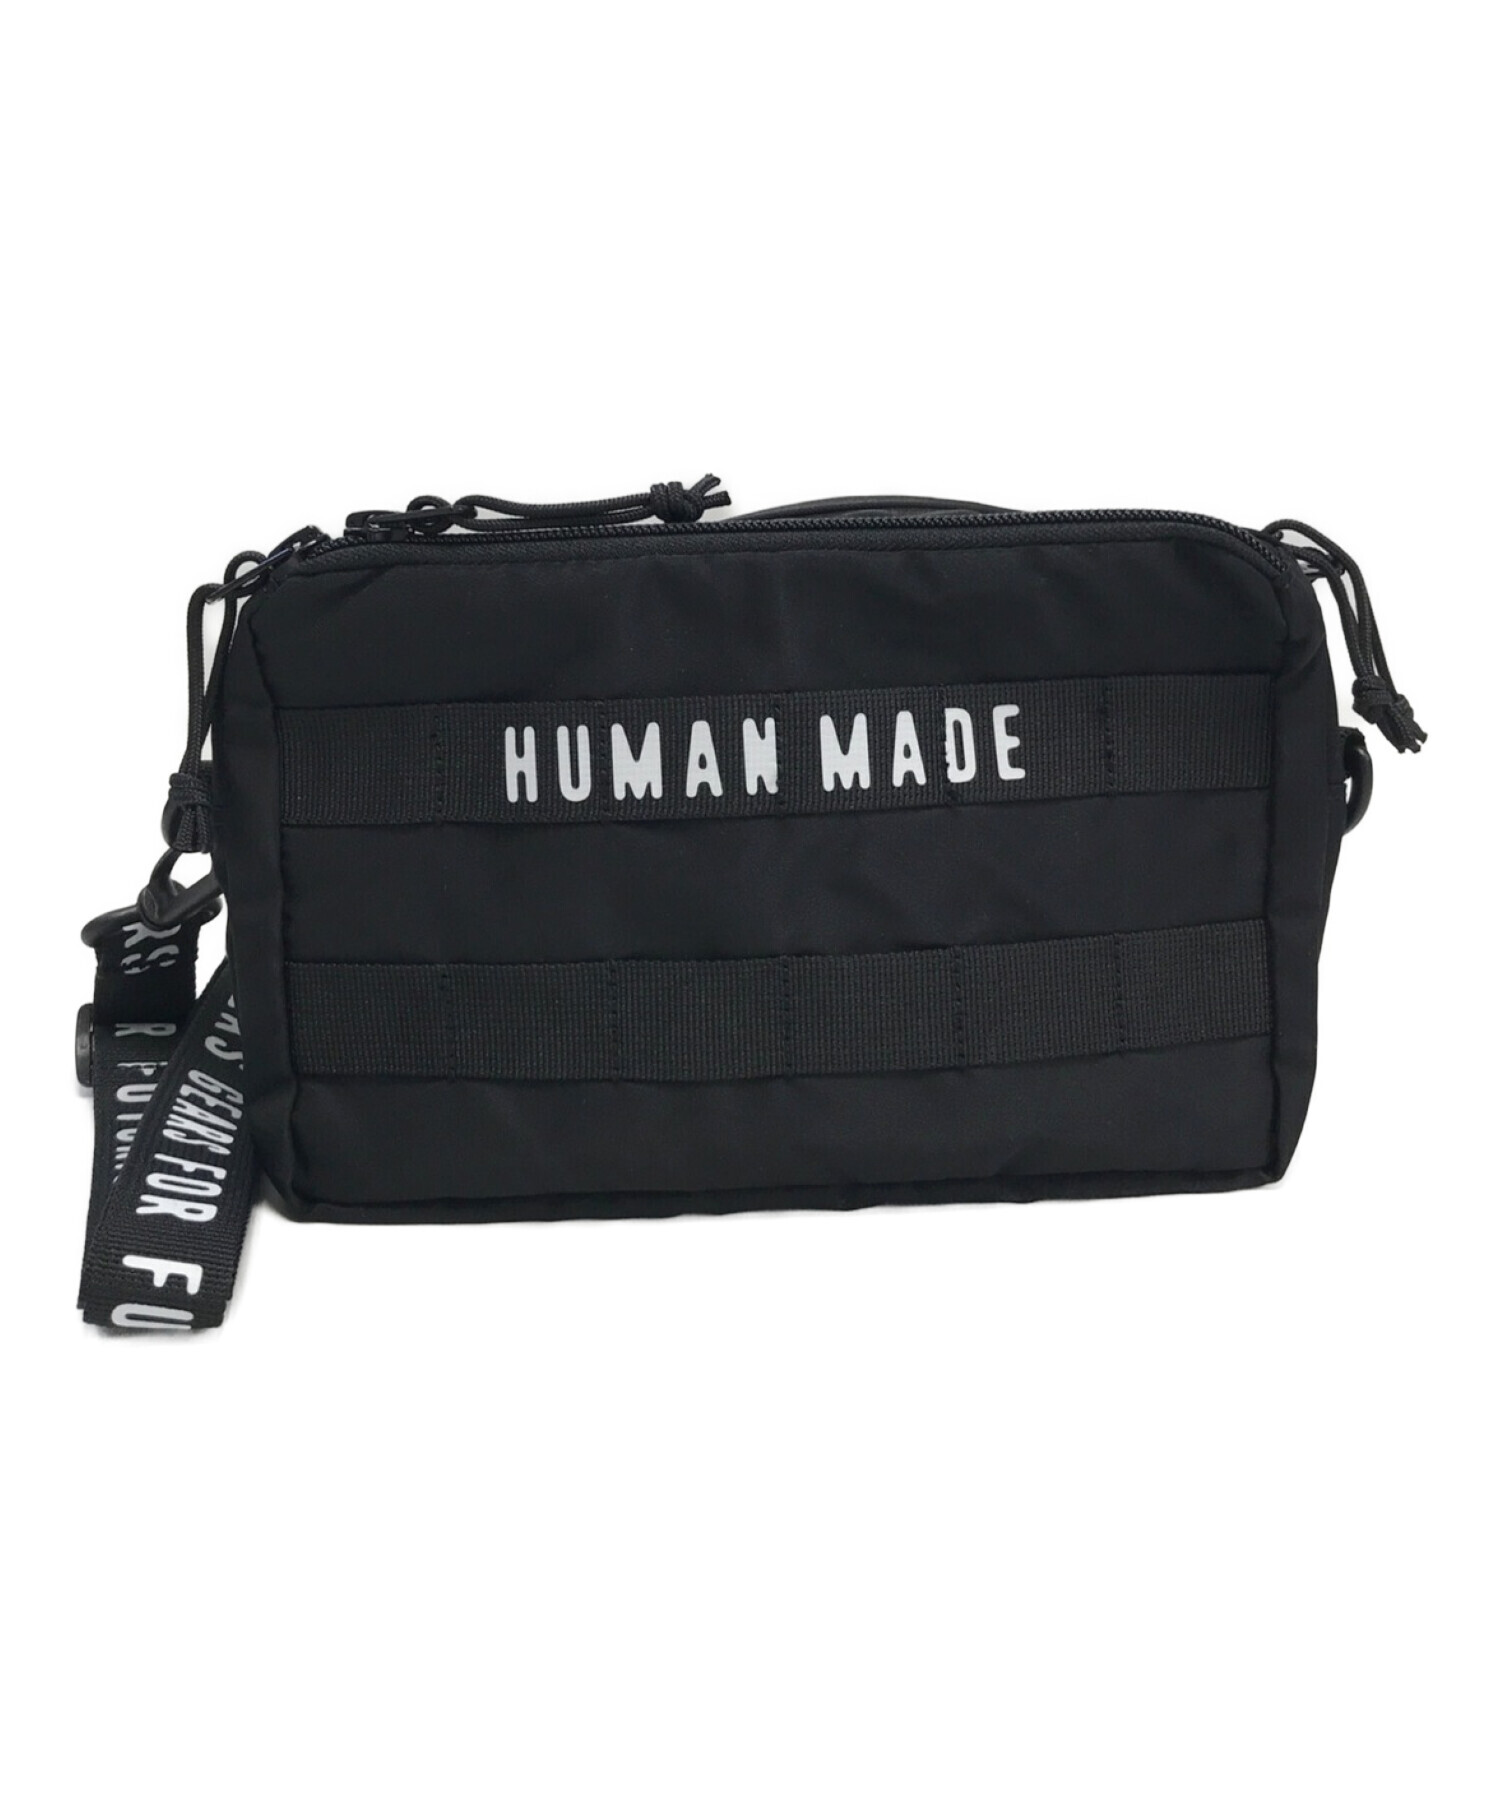 HUMAN MADE (ヒューマンメイド) ショルダーバッグ ブラック 未使用品